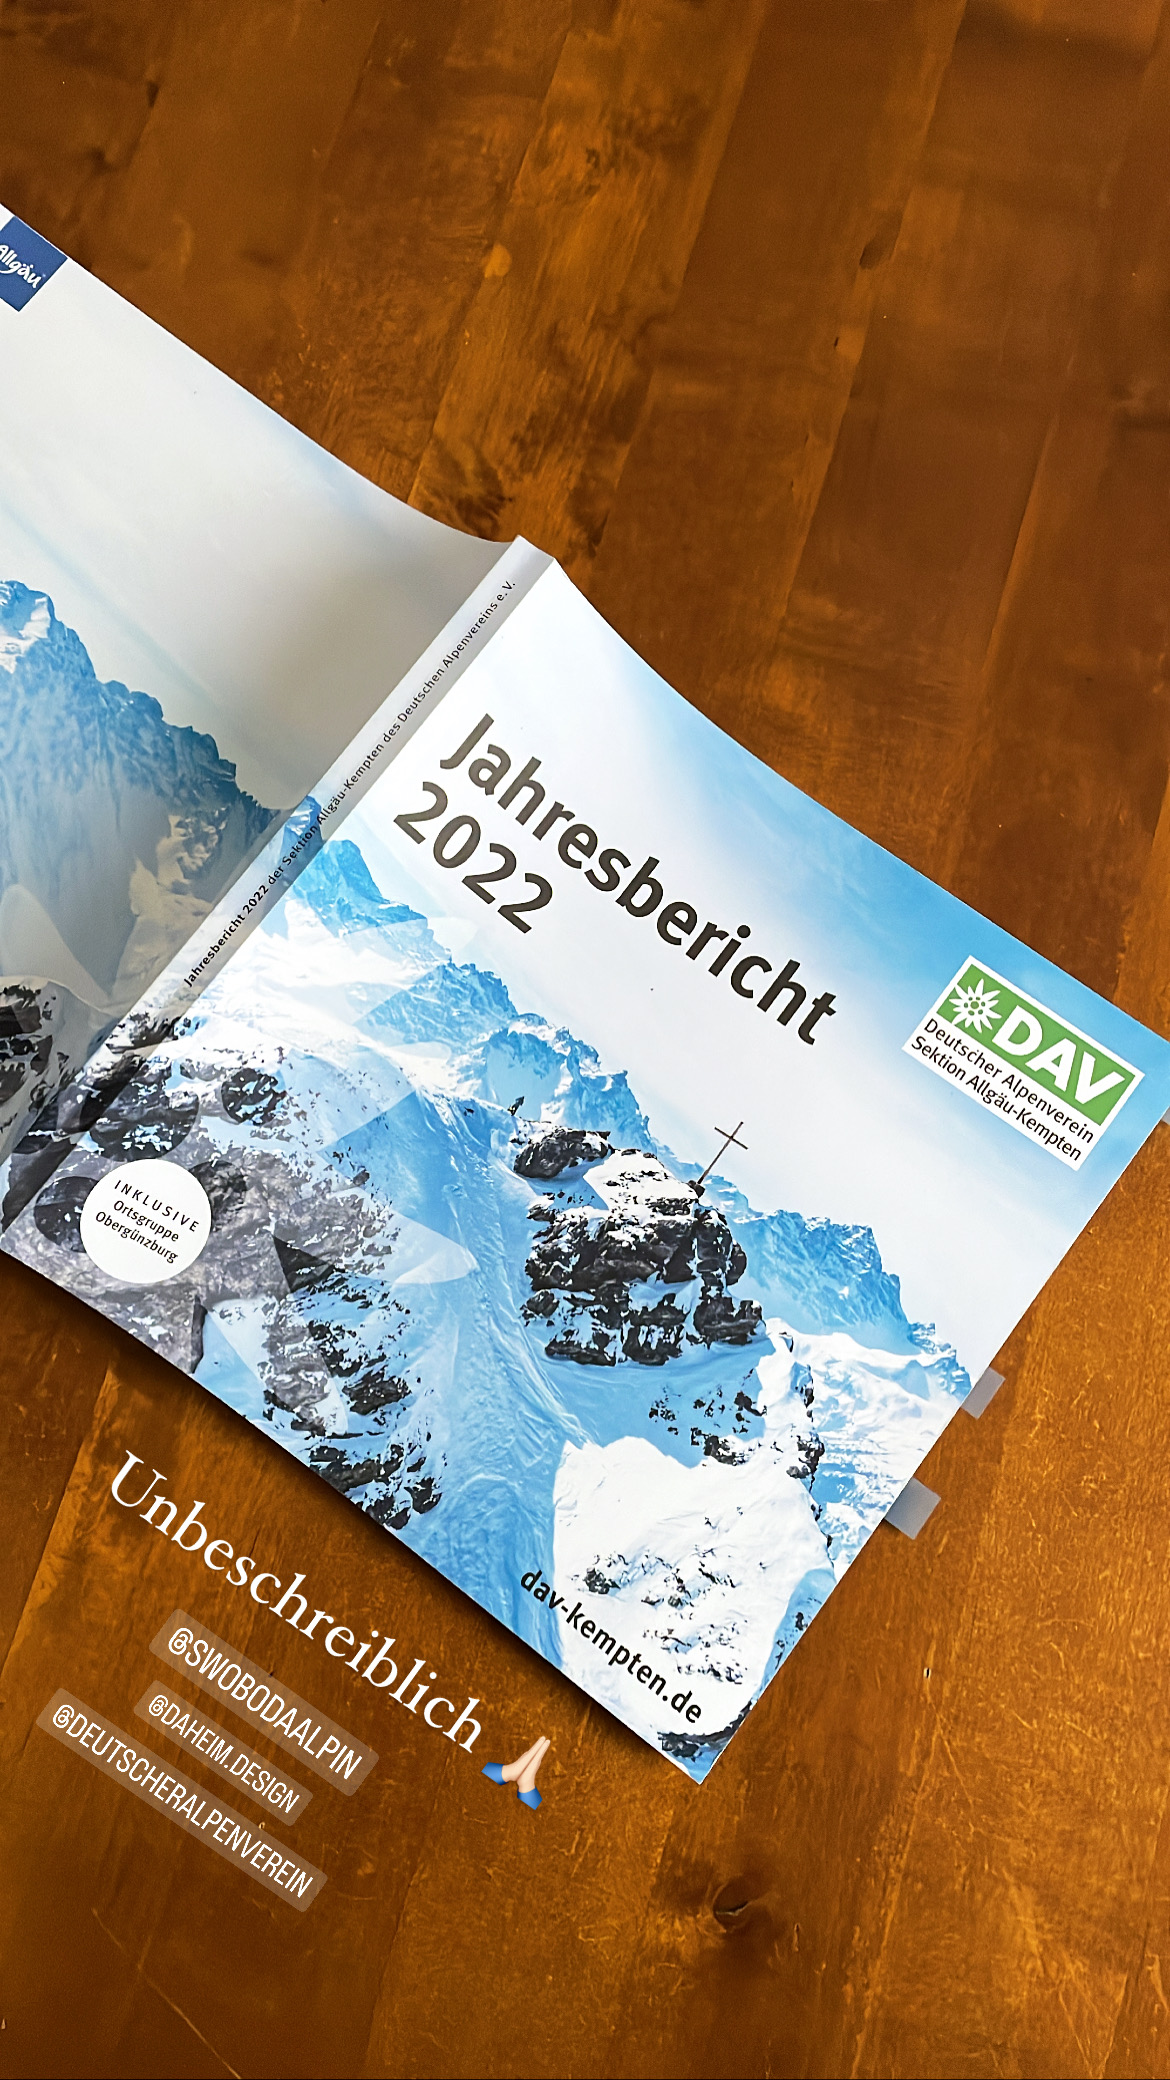 Coverbild des Jahresberichts 2022 vom DAV Kempten mit Bergsilhouette, Gipfelkreuz im Winter